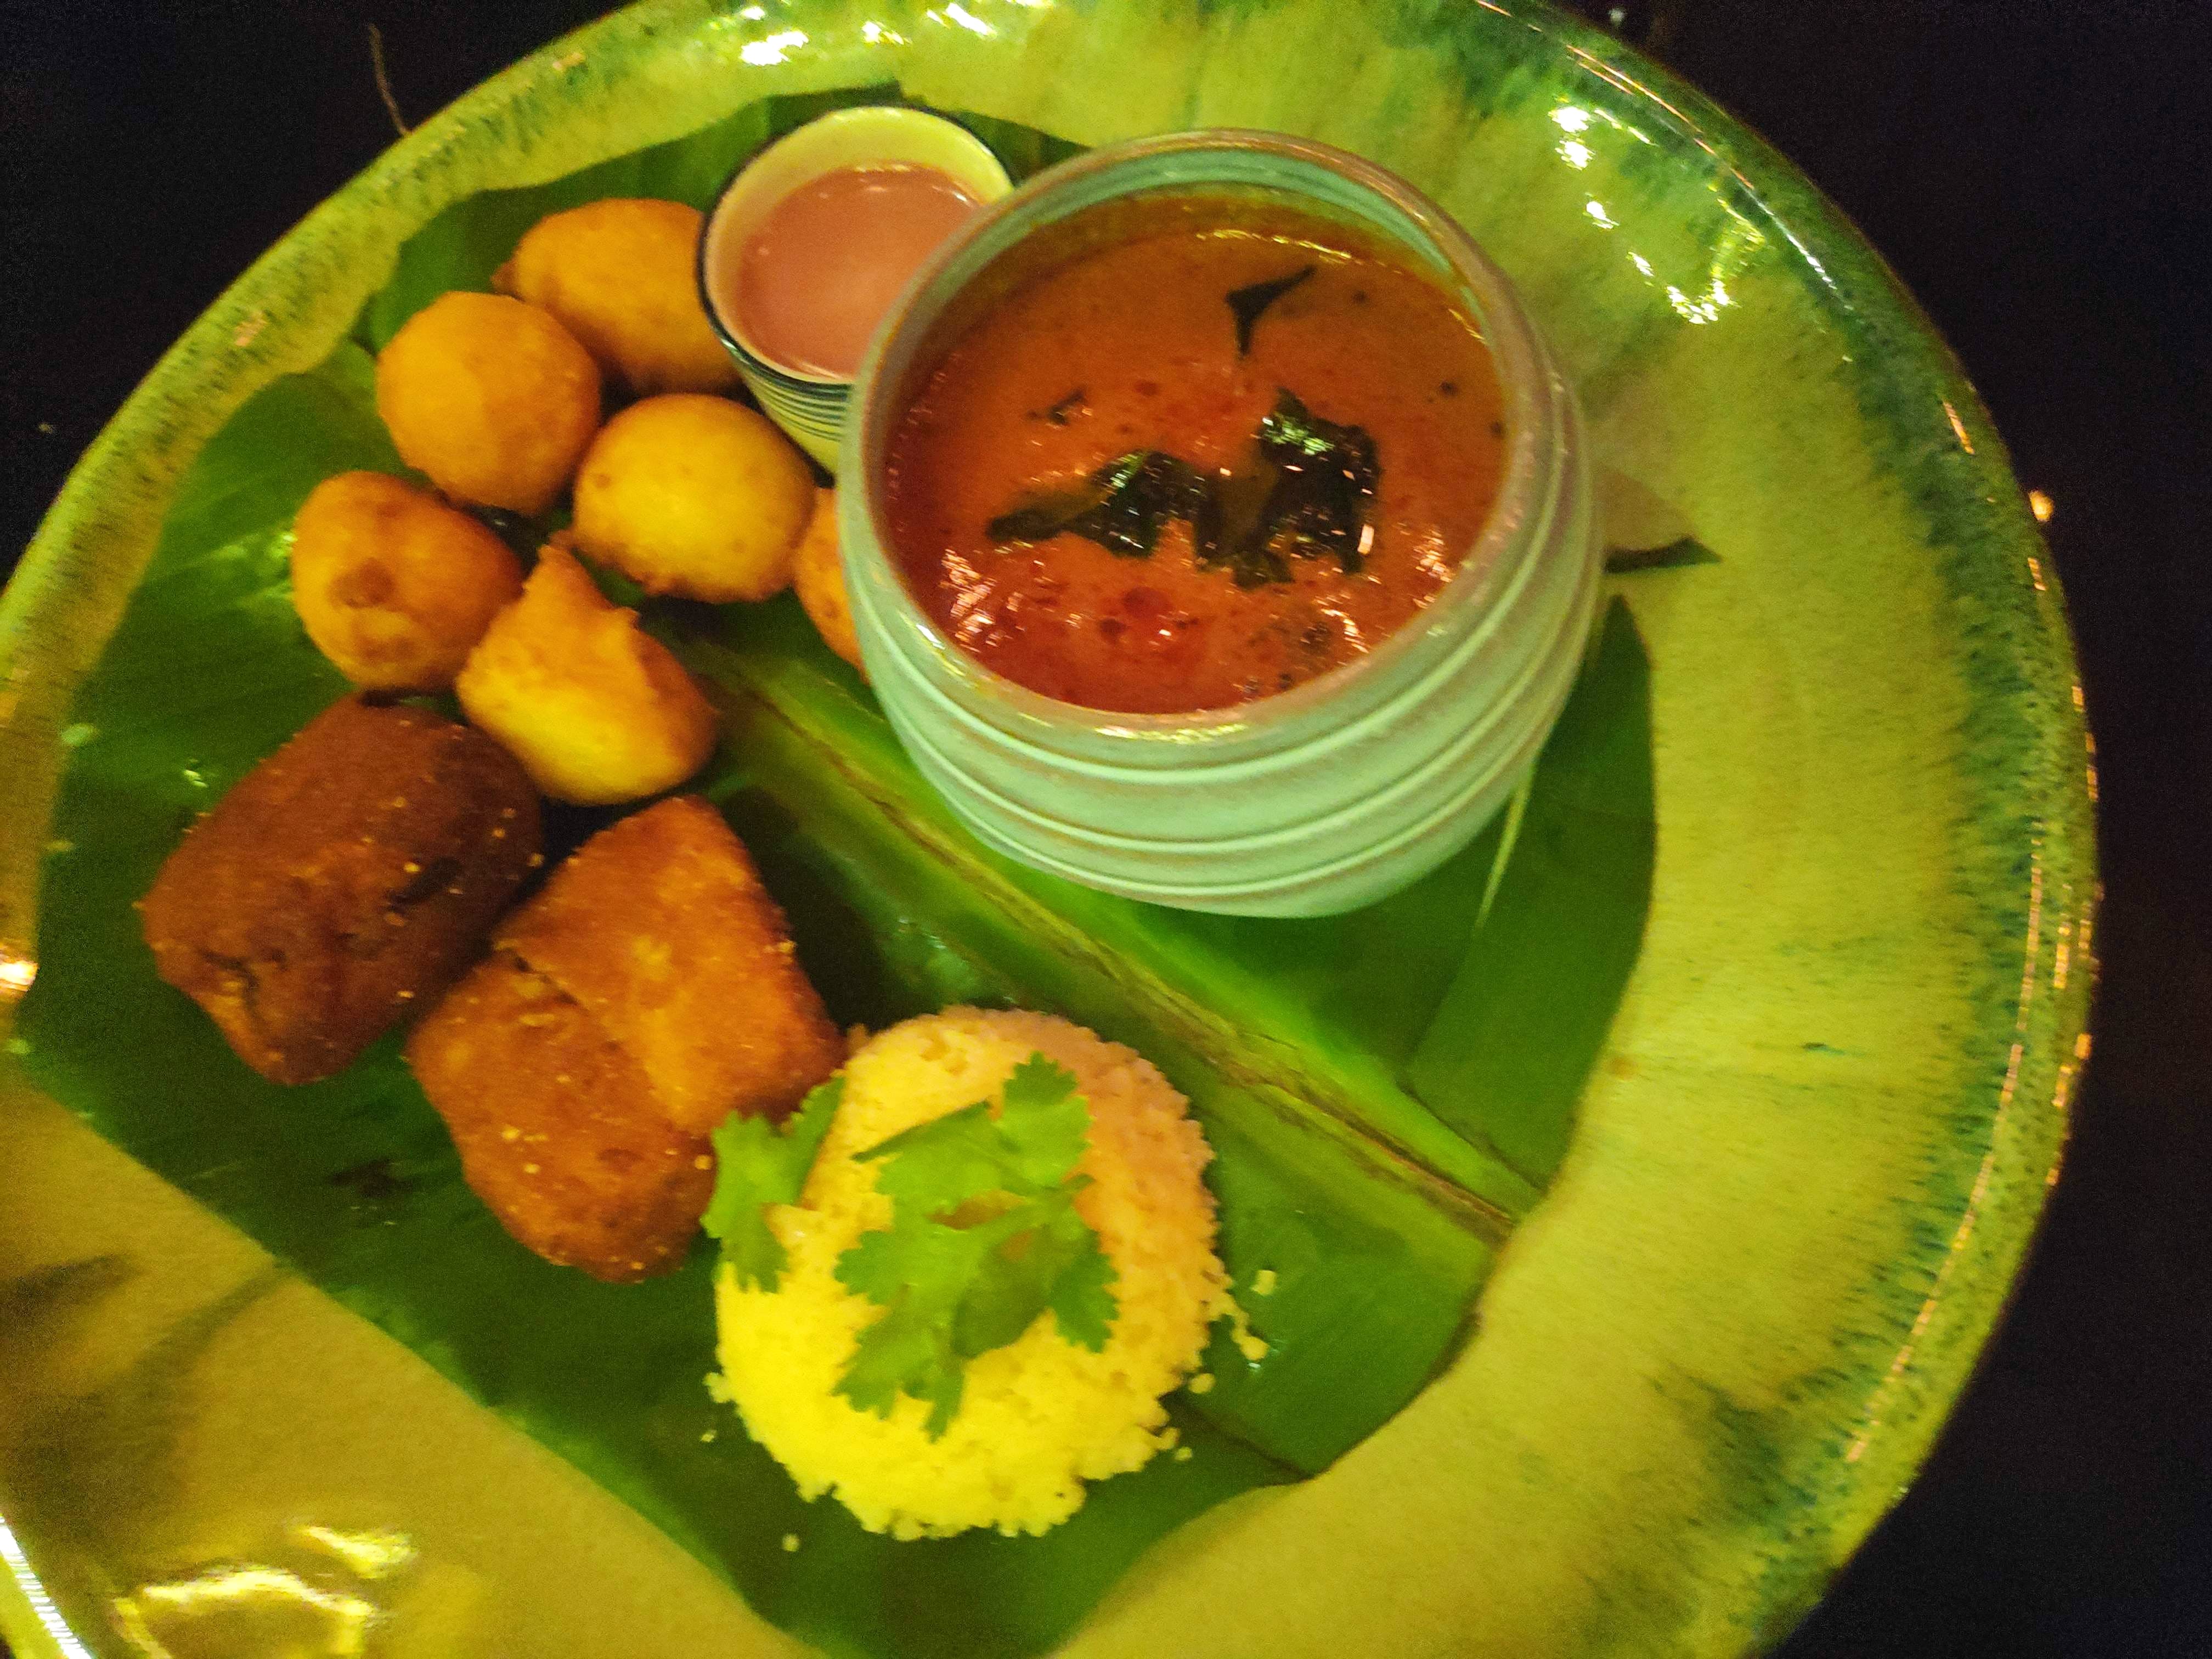 Dish,Food,Cuisine,Ingredient,Meal,Vegetarian food,Produce,Indian cuisine,Tamil food,Breakfast